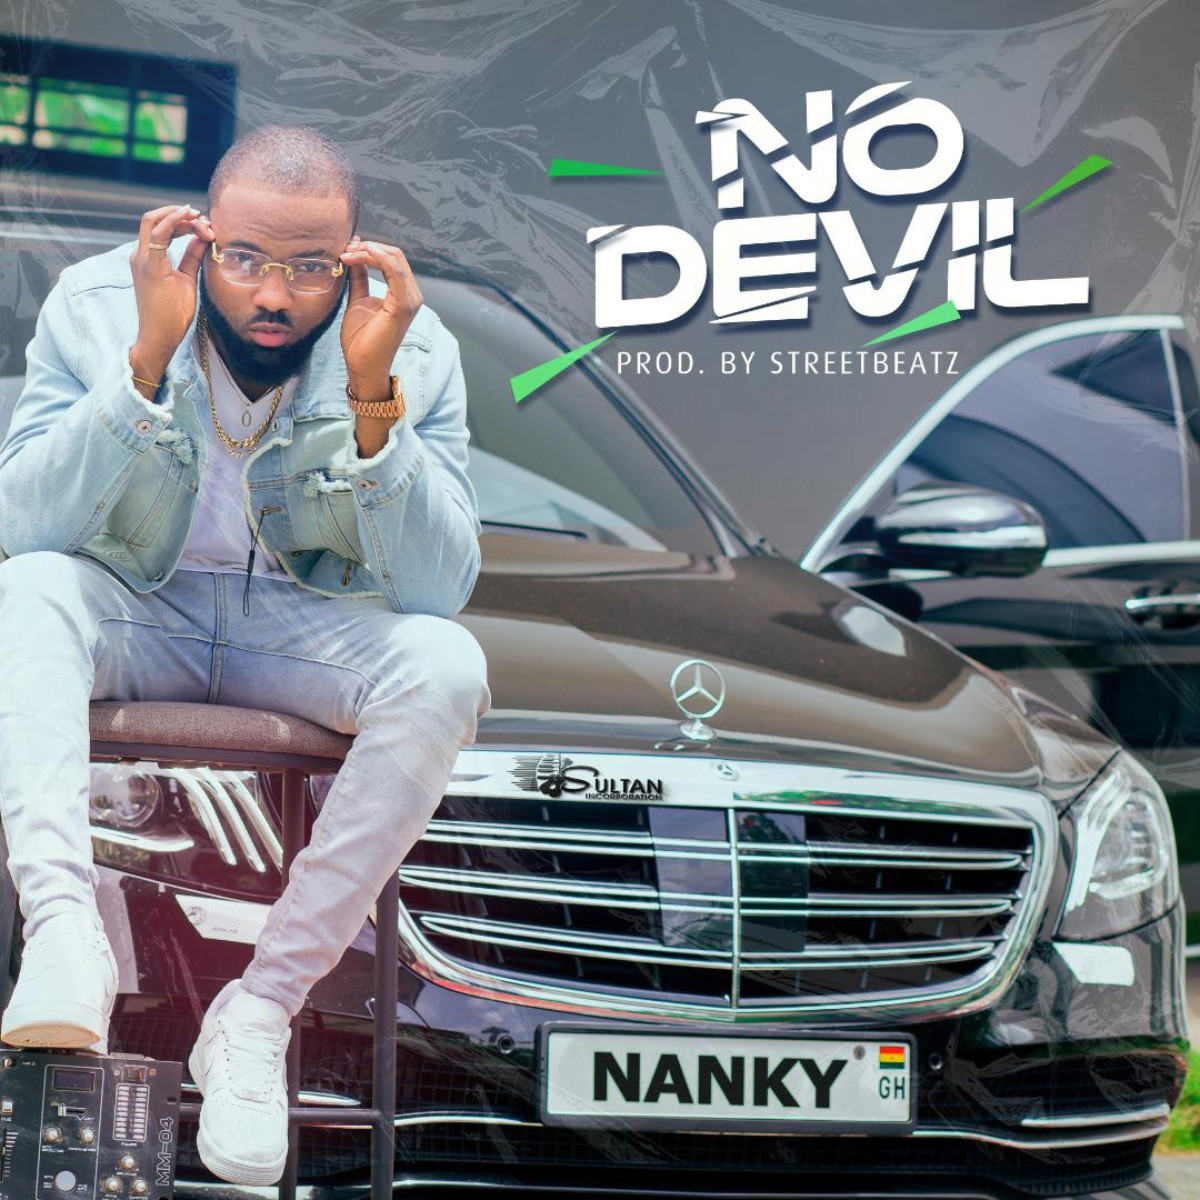 No Devil by Nanky